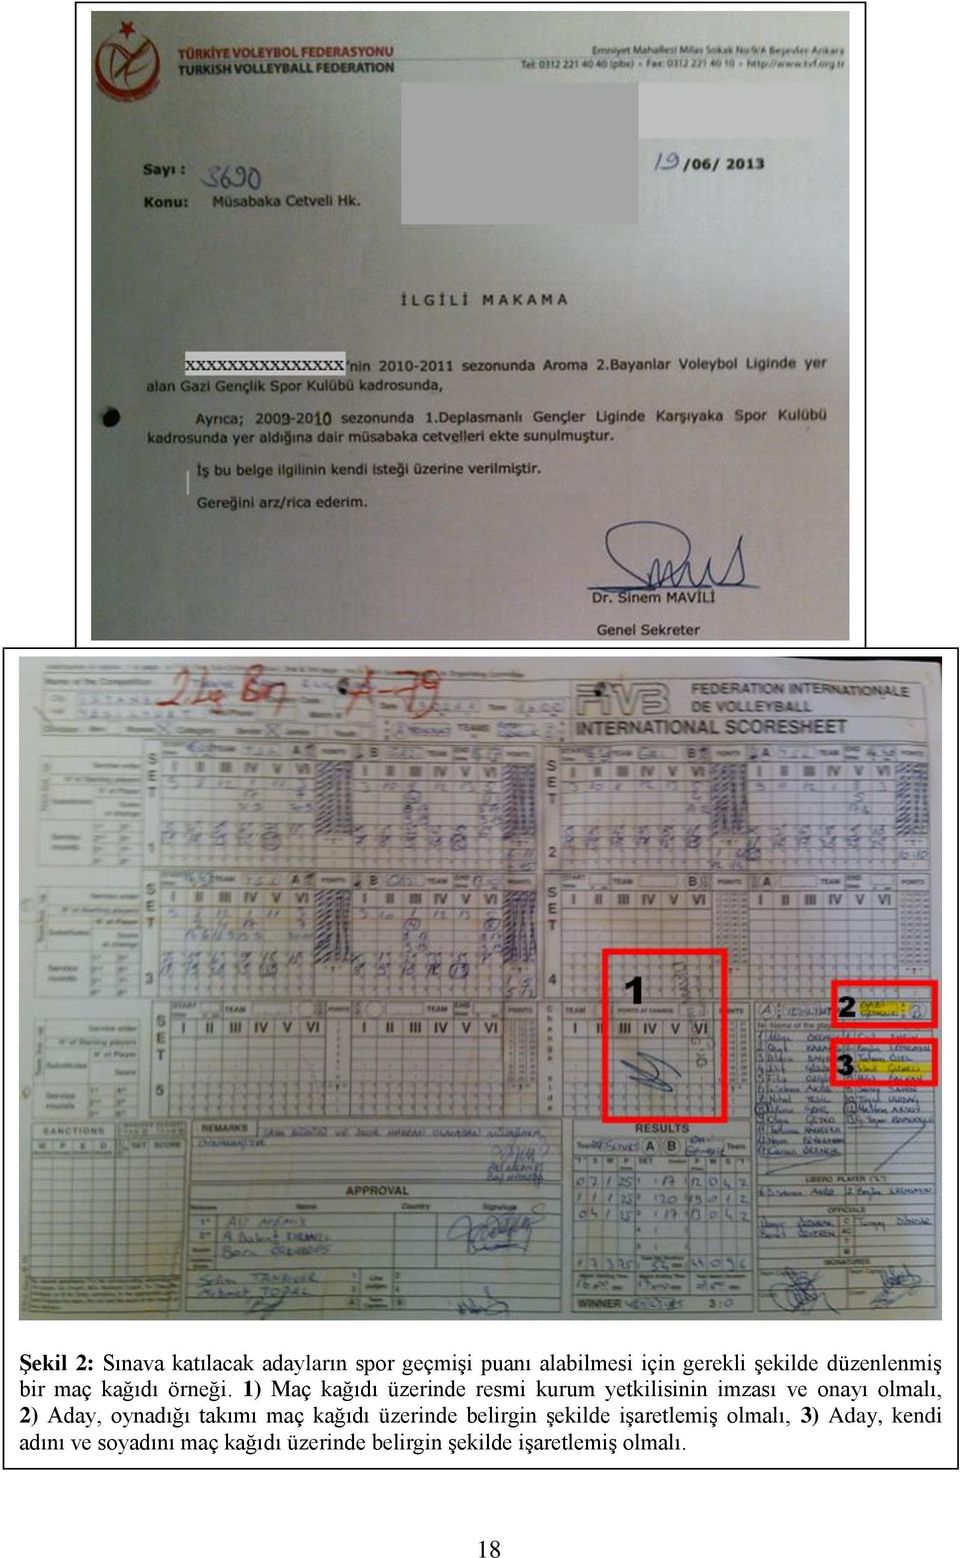 1) Maç kağıdı üzerinde resmi kurum yetkilisinin imzası ve onayı olmalı, 2) Aday, oynadığı